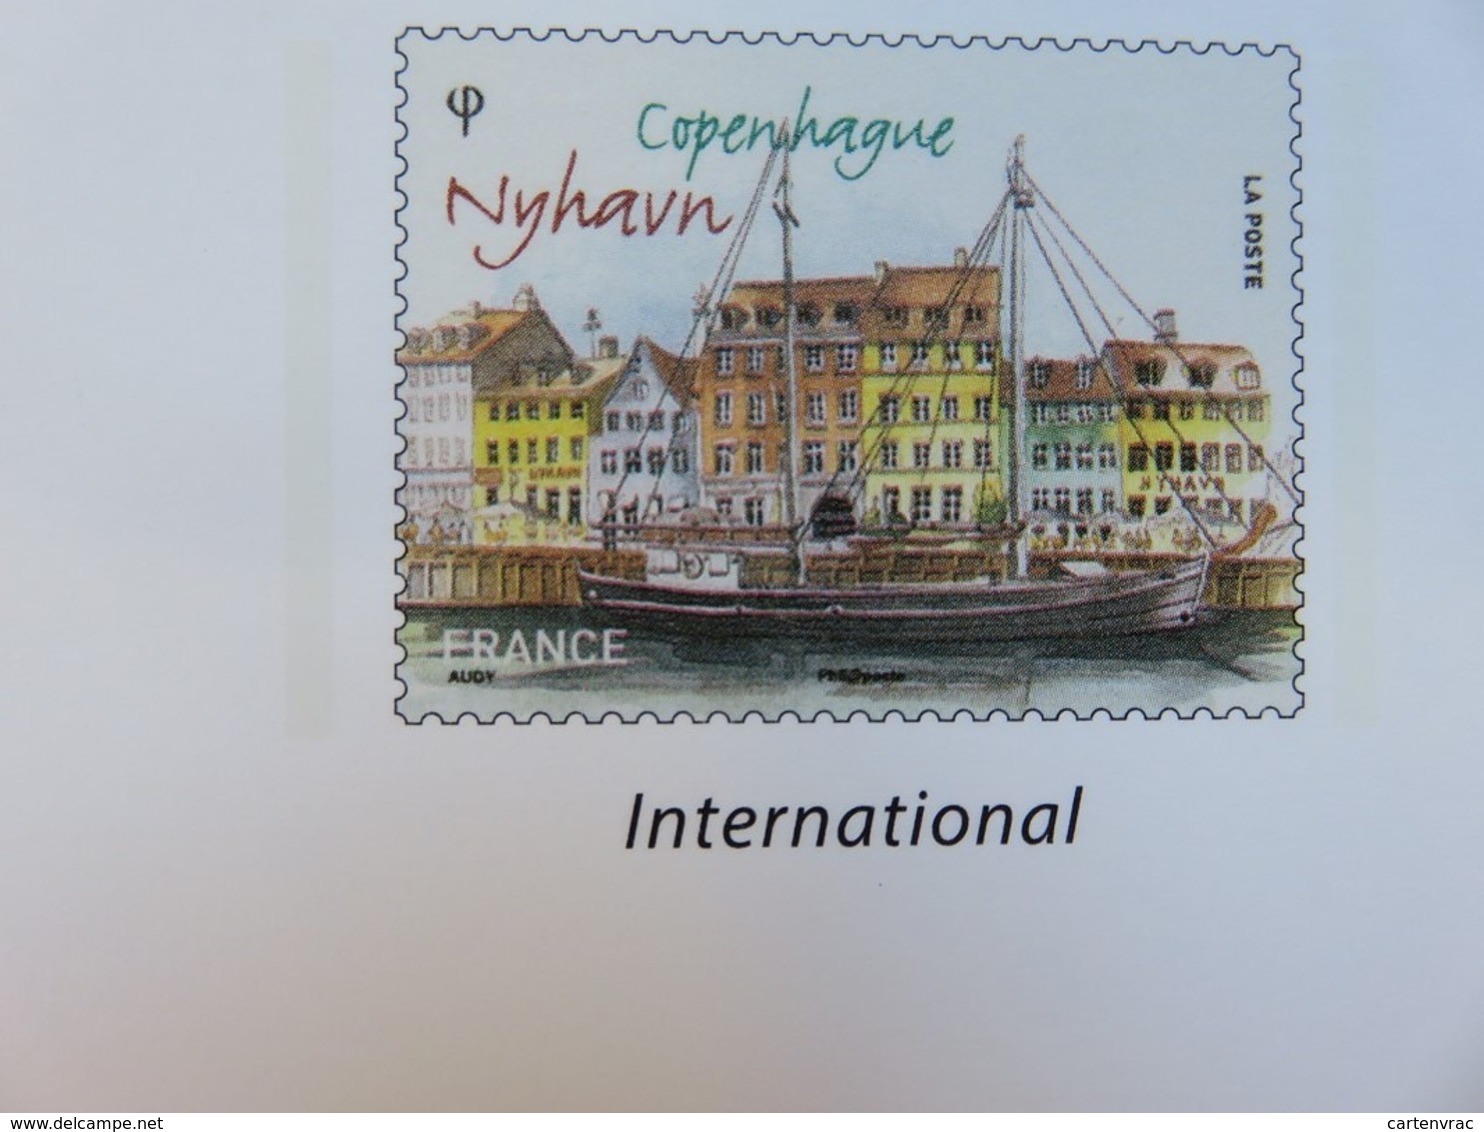 PAP - Carte Postale Pré-timbrée - Timbre International - Copenhage Capitale Européenne - Série Capitales - NEUF - Documents Of Postal Services